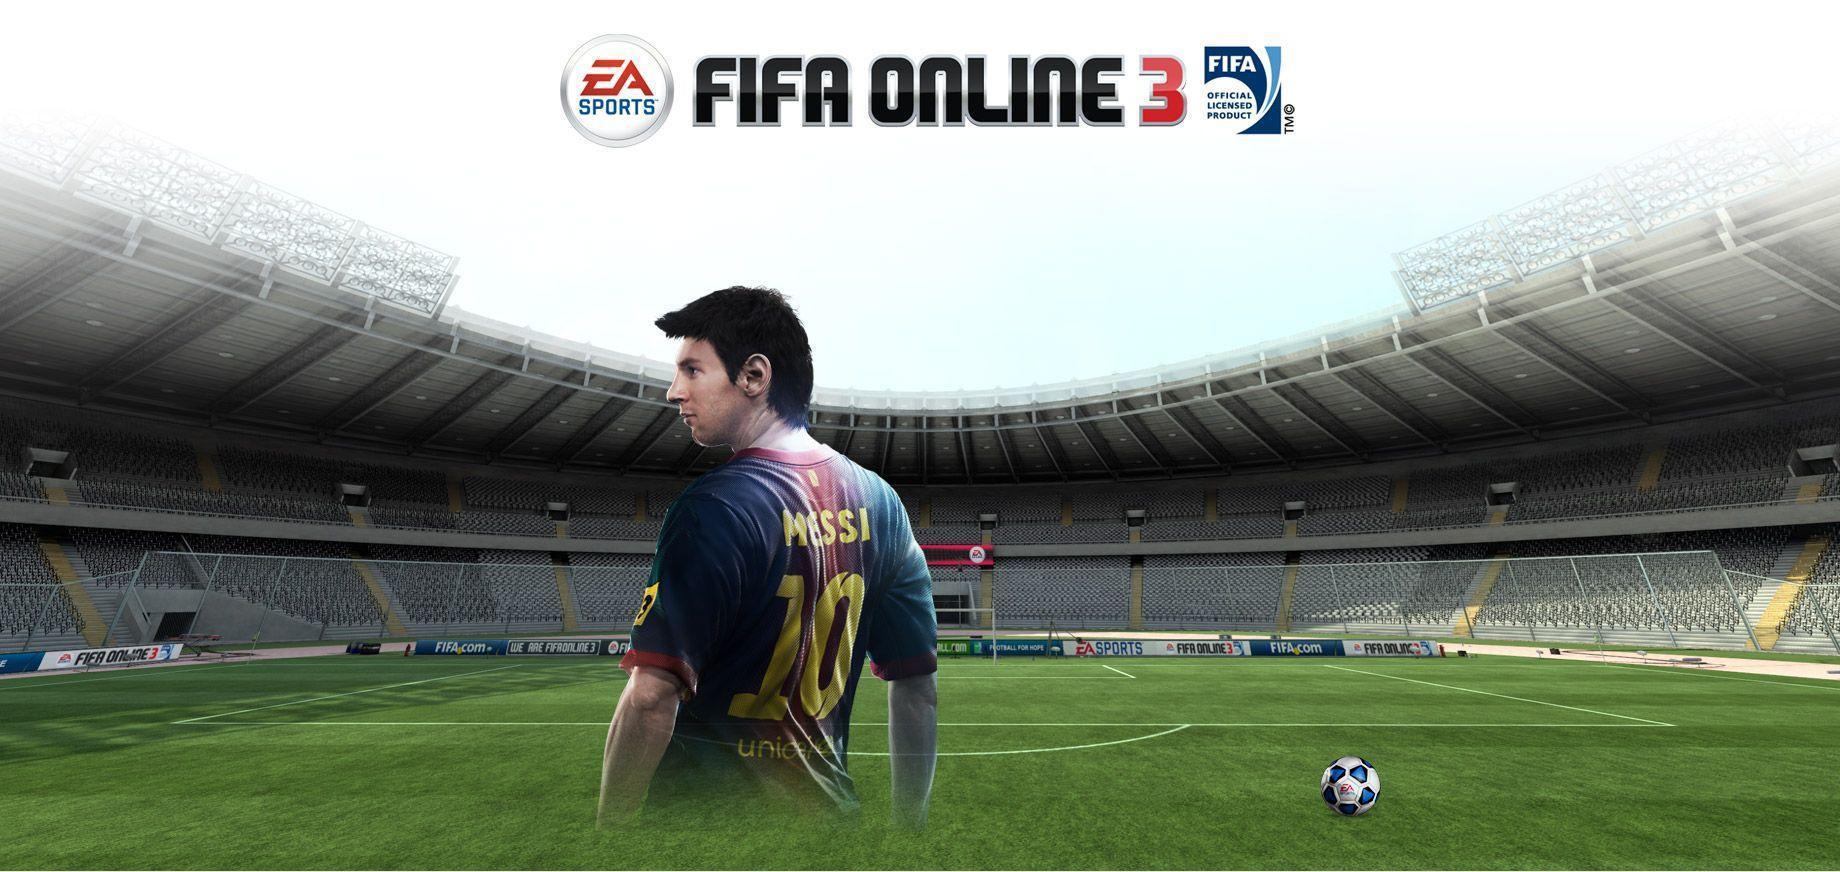 EA Sports FIFA Online 4 Vietnam  Anh em nhận được gì từ chuyển Sò sang  CASH hôm nay thế Cùng chia sẻ nào Ps Hình nền đẹp nhỉ 3  Facebook